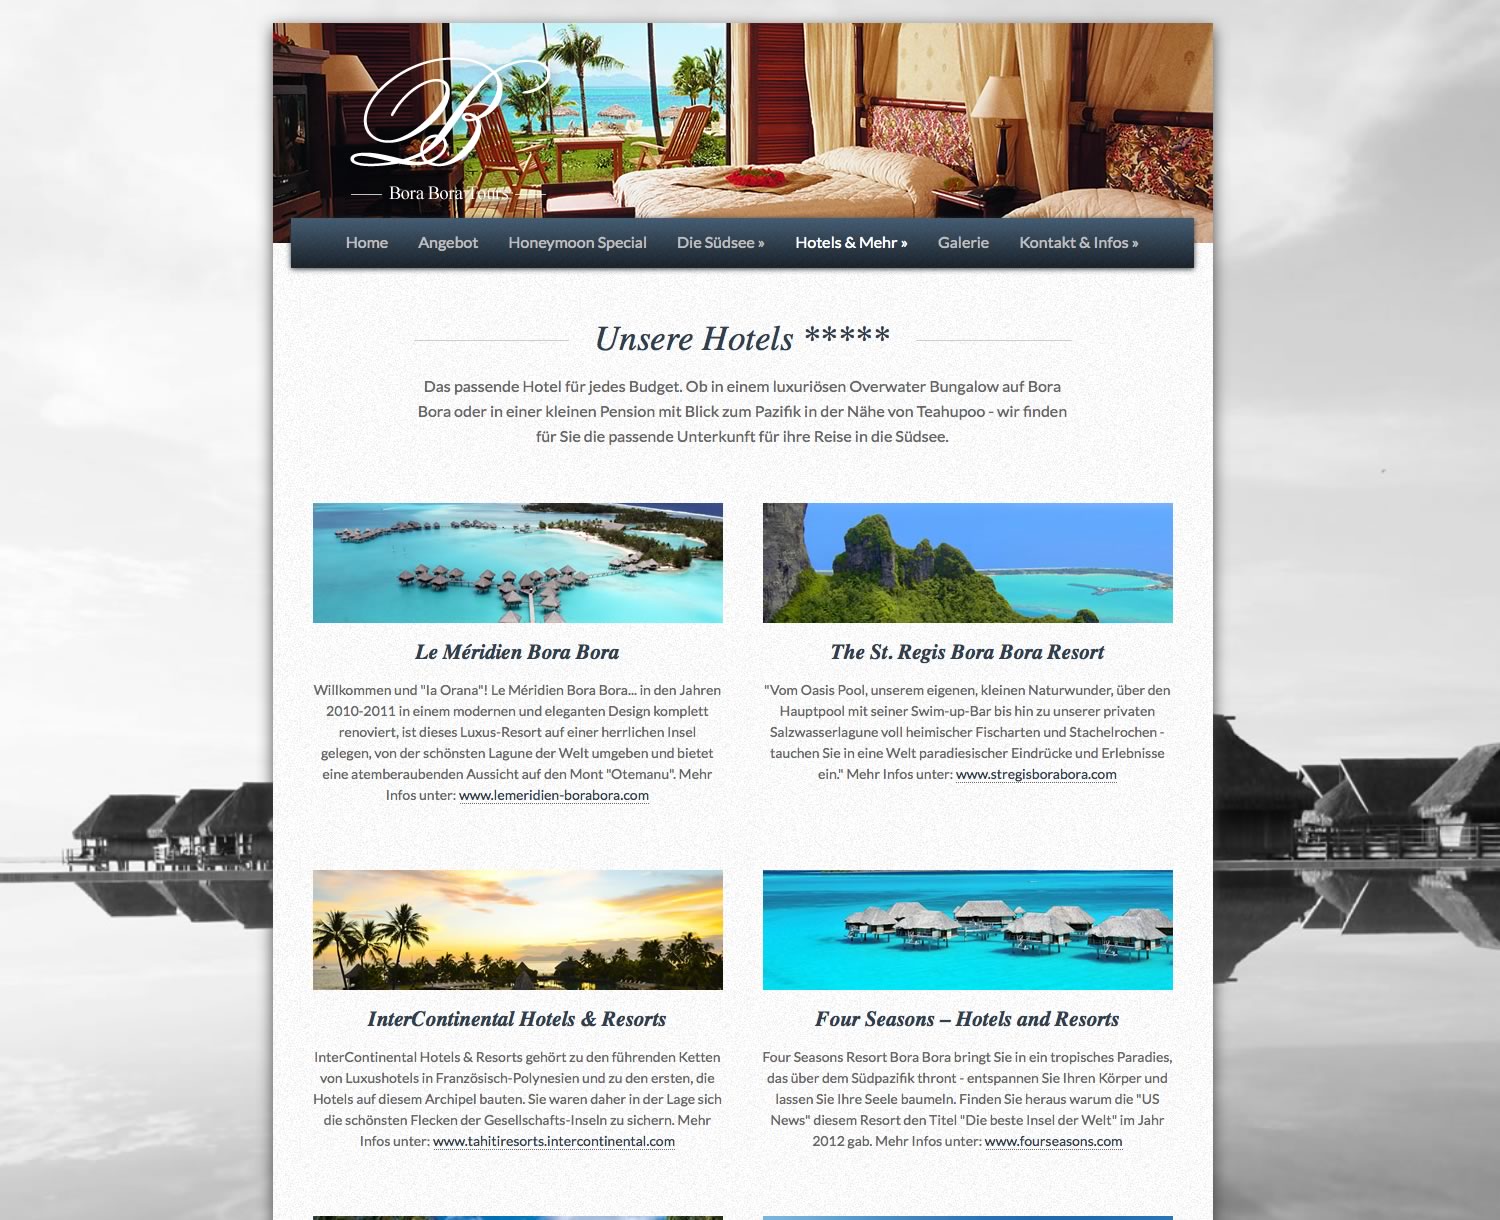 Bora Bora, Tours, Reisen, Urlaub, Ferien, Flüge, HTML 5, jQuery, Website, Homepage, Programmierung, Entwicklung, Webdesign, Web, Internetauftritt, Firma, Unternehmen, Weblooks